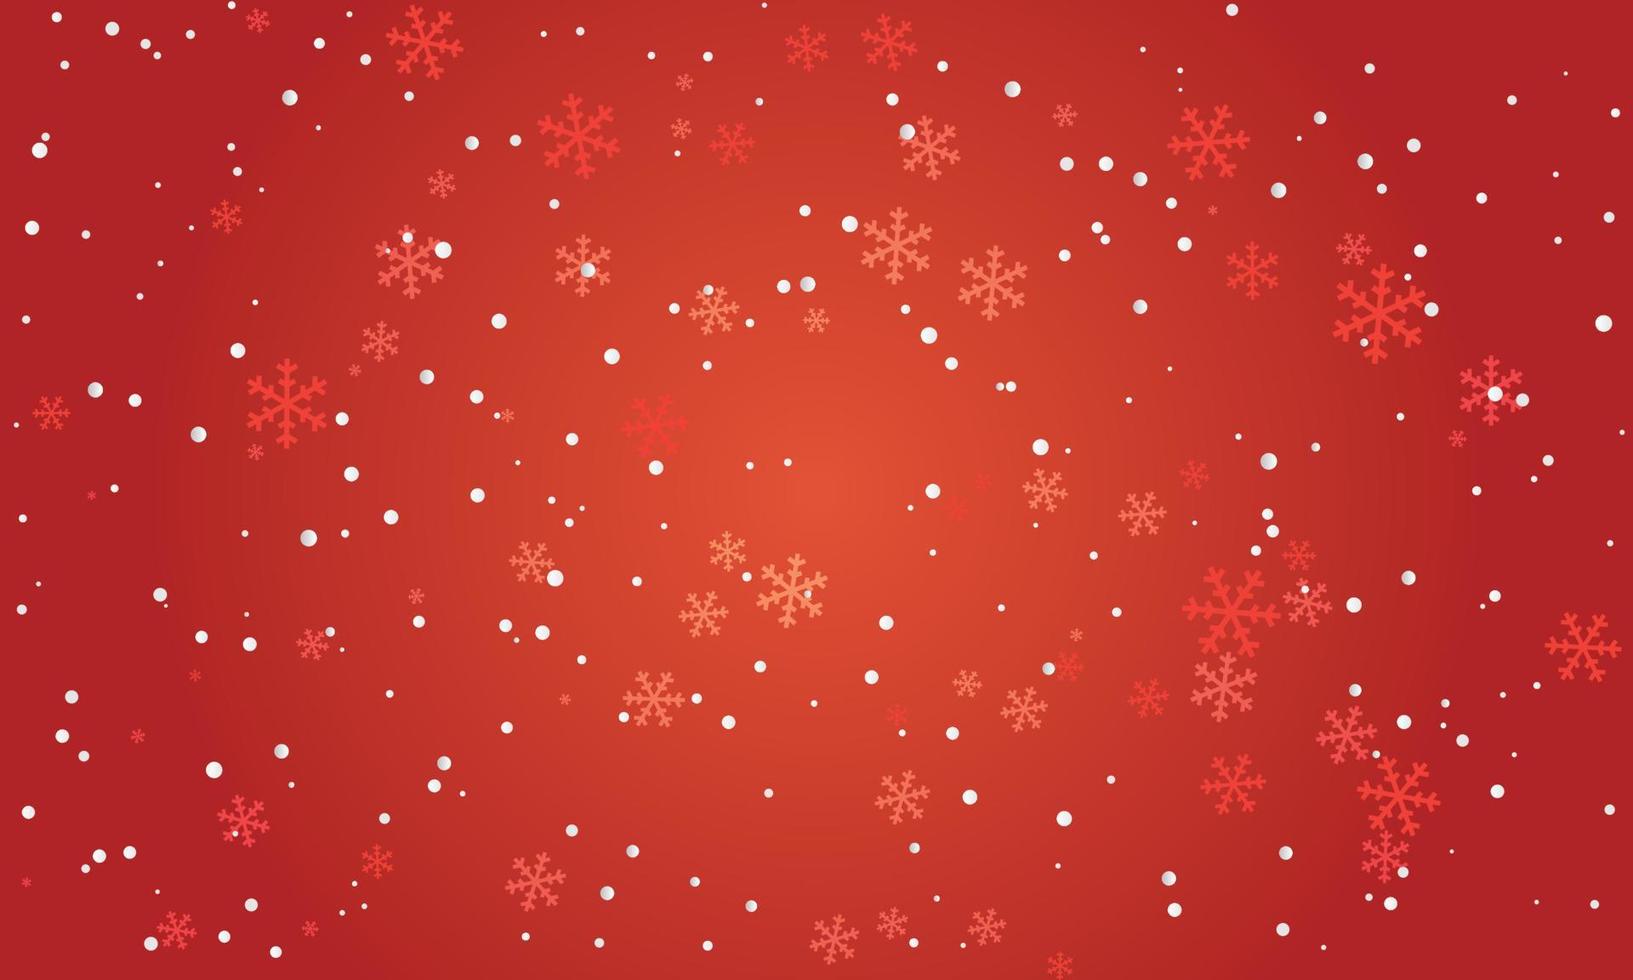 sfondo rosso fiocco di neve di neve. natale inverno nevoso design. fiocchi di neve bianchi che cadono, paesaggio astratto. effetto freddo. natura magica fantasia nevicata texture decorazione. illustrazione vettoriale